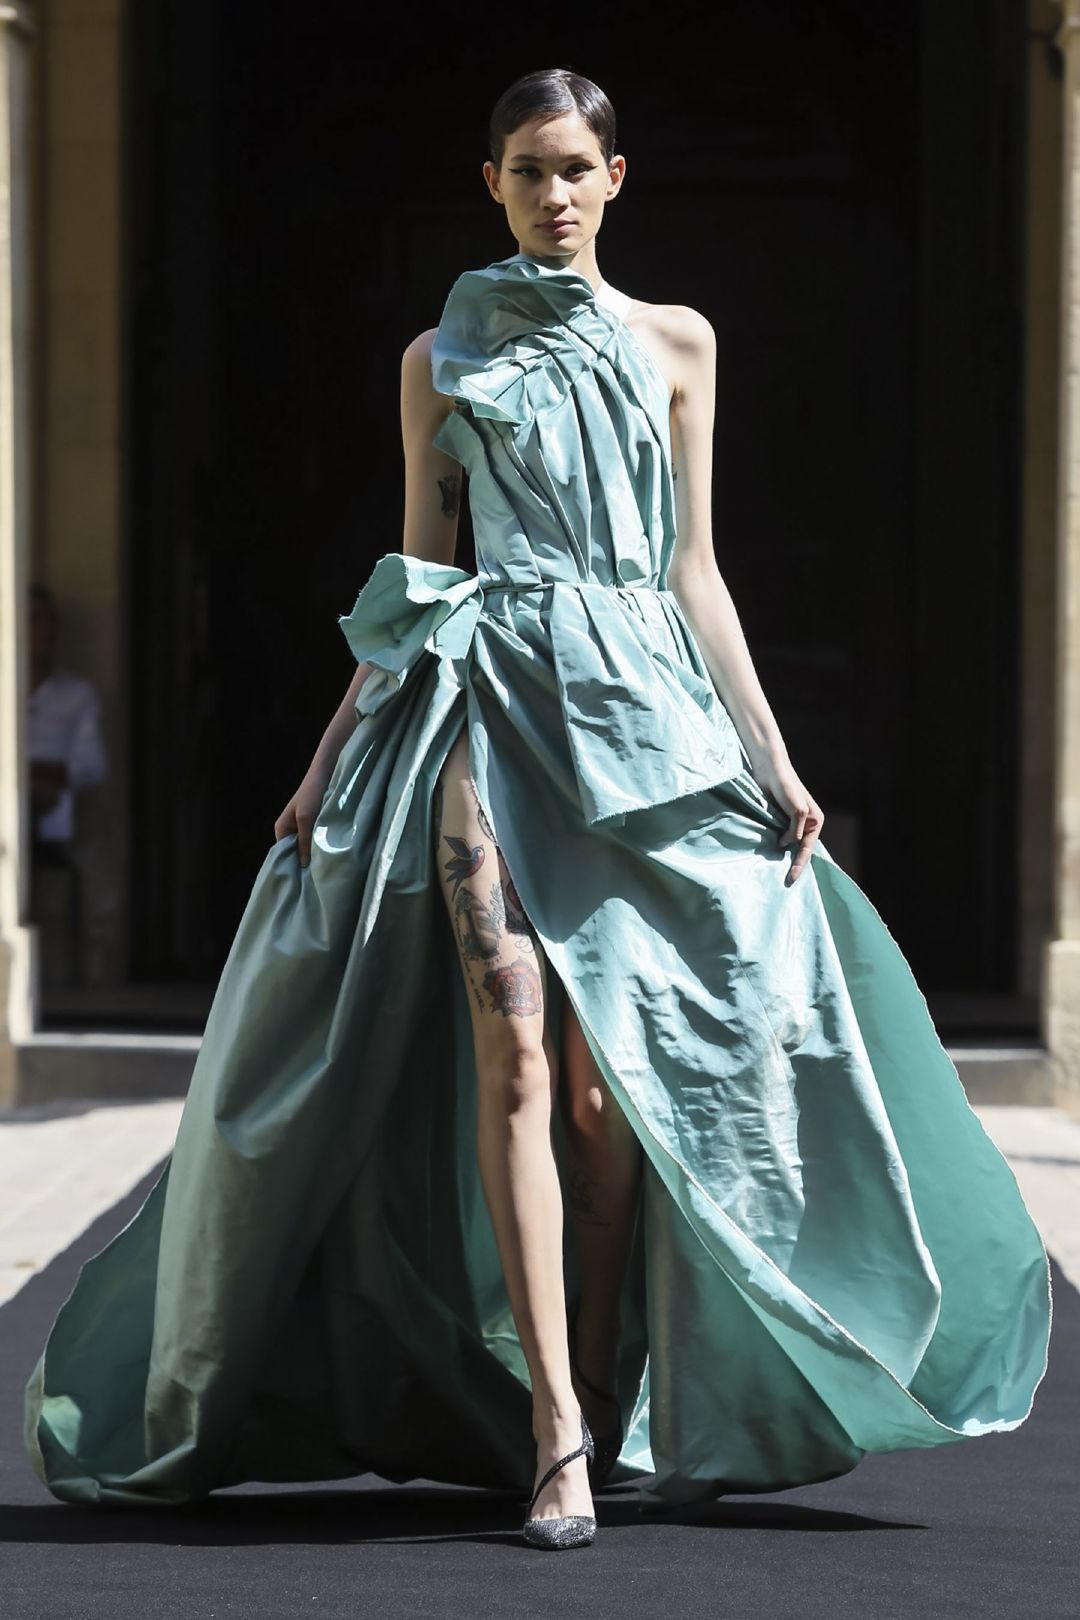 那些最美的仙女裙 我们在Dior秀场找到了_时尚圈_潮流服饰频道_VOGUE时尚网